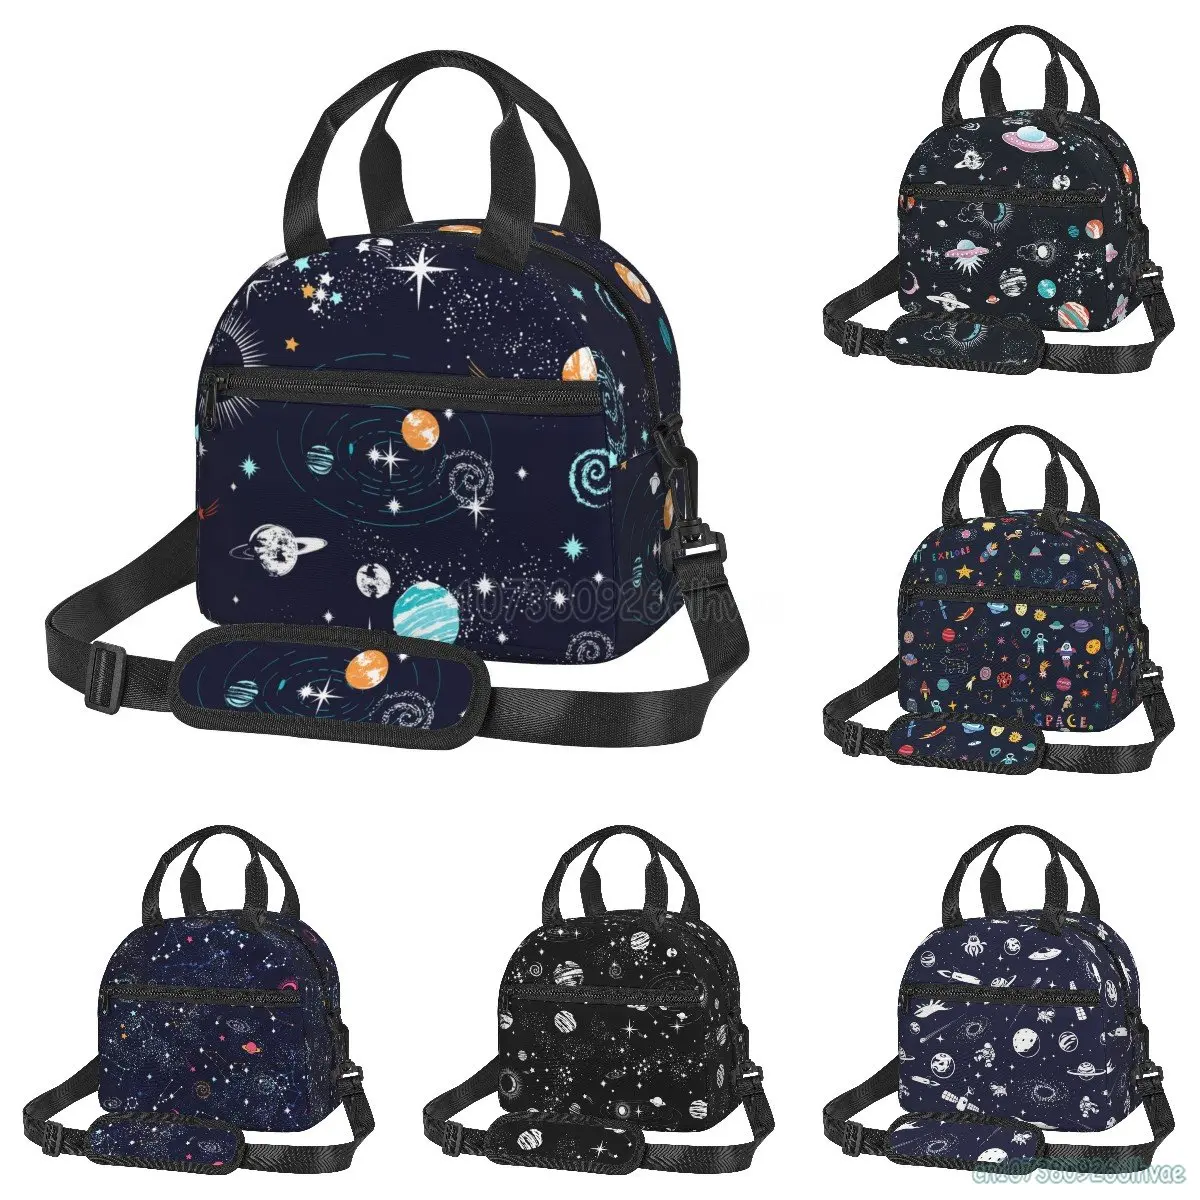 Ланч-бокс Galaxy Space Planet Многоразового Использования, изолированный Ланч-бокс, кулер, Прочная сумка для Бенто, сумка для мальчиков и девочек, Школьная сумка для пикника